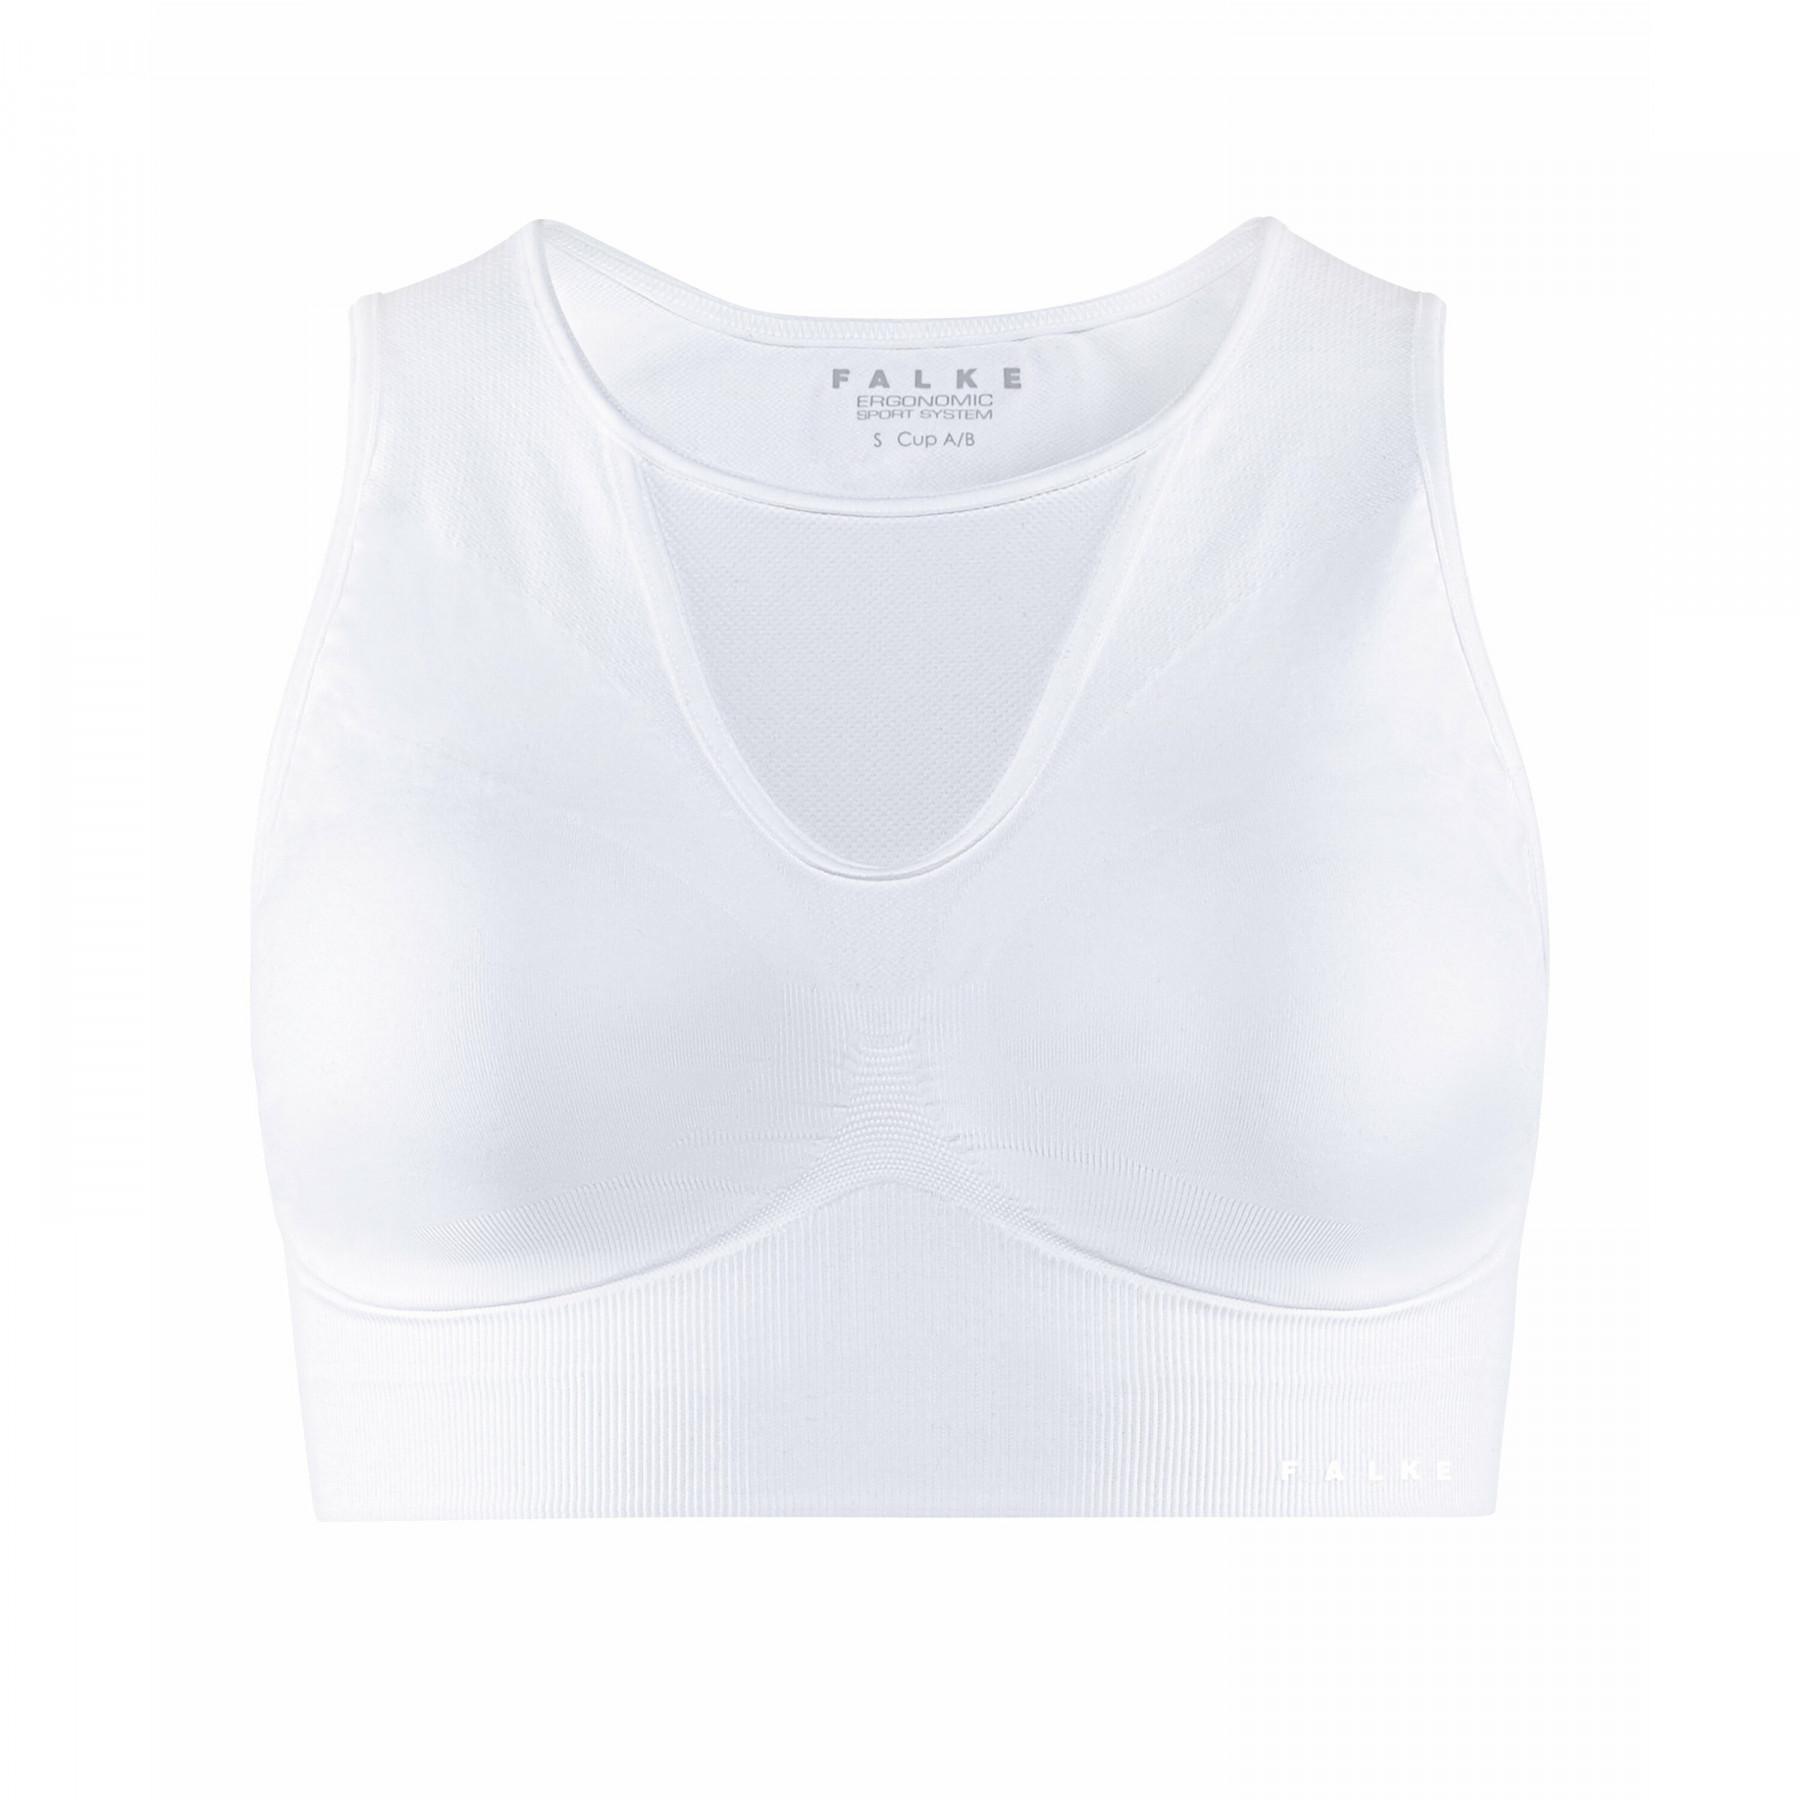 Women's bra Falke Maximum Support